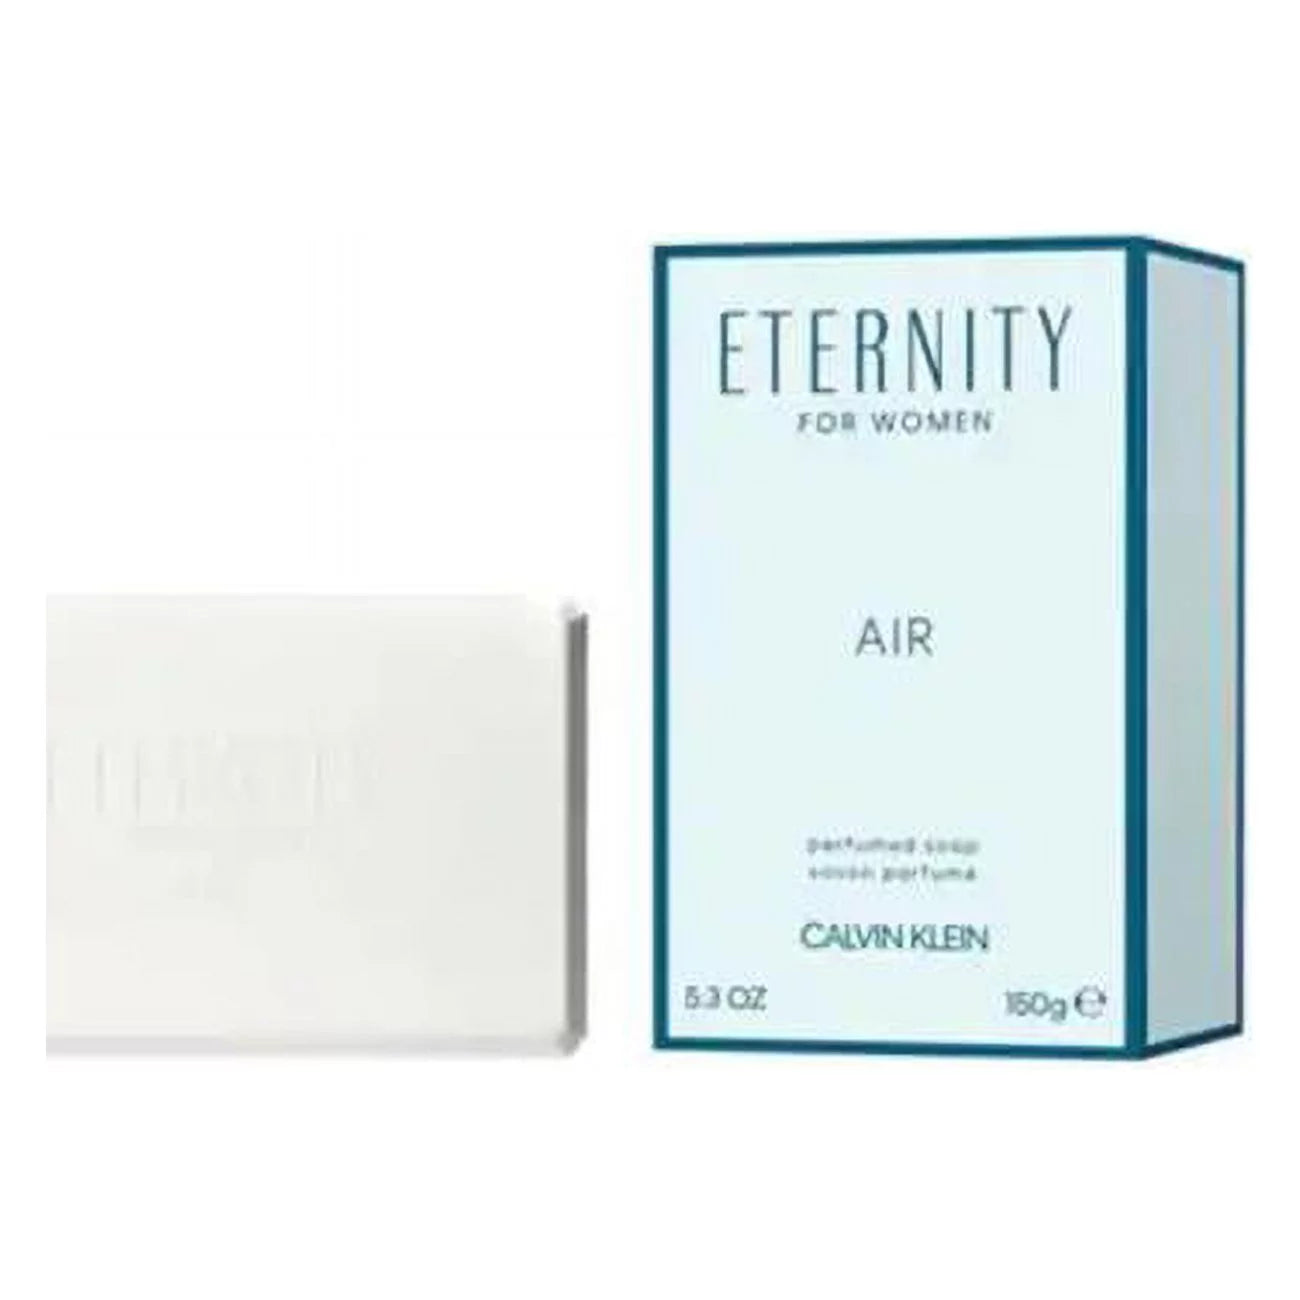 Calvin Klein Calvin Klein Eternity Air Face & Body Soap 150G